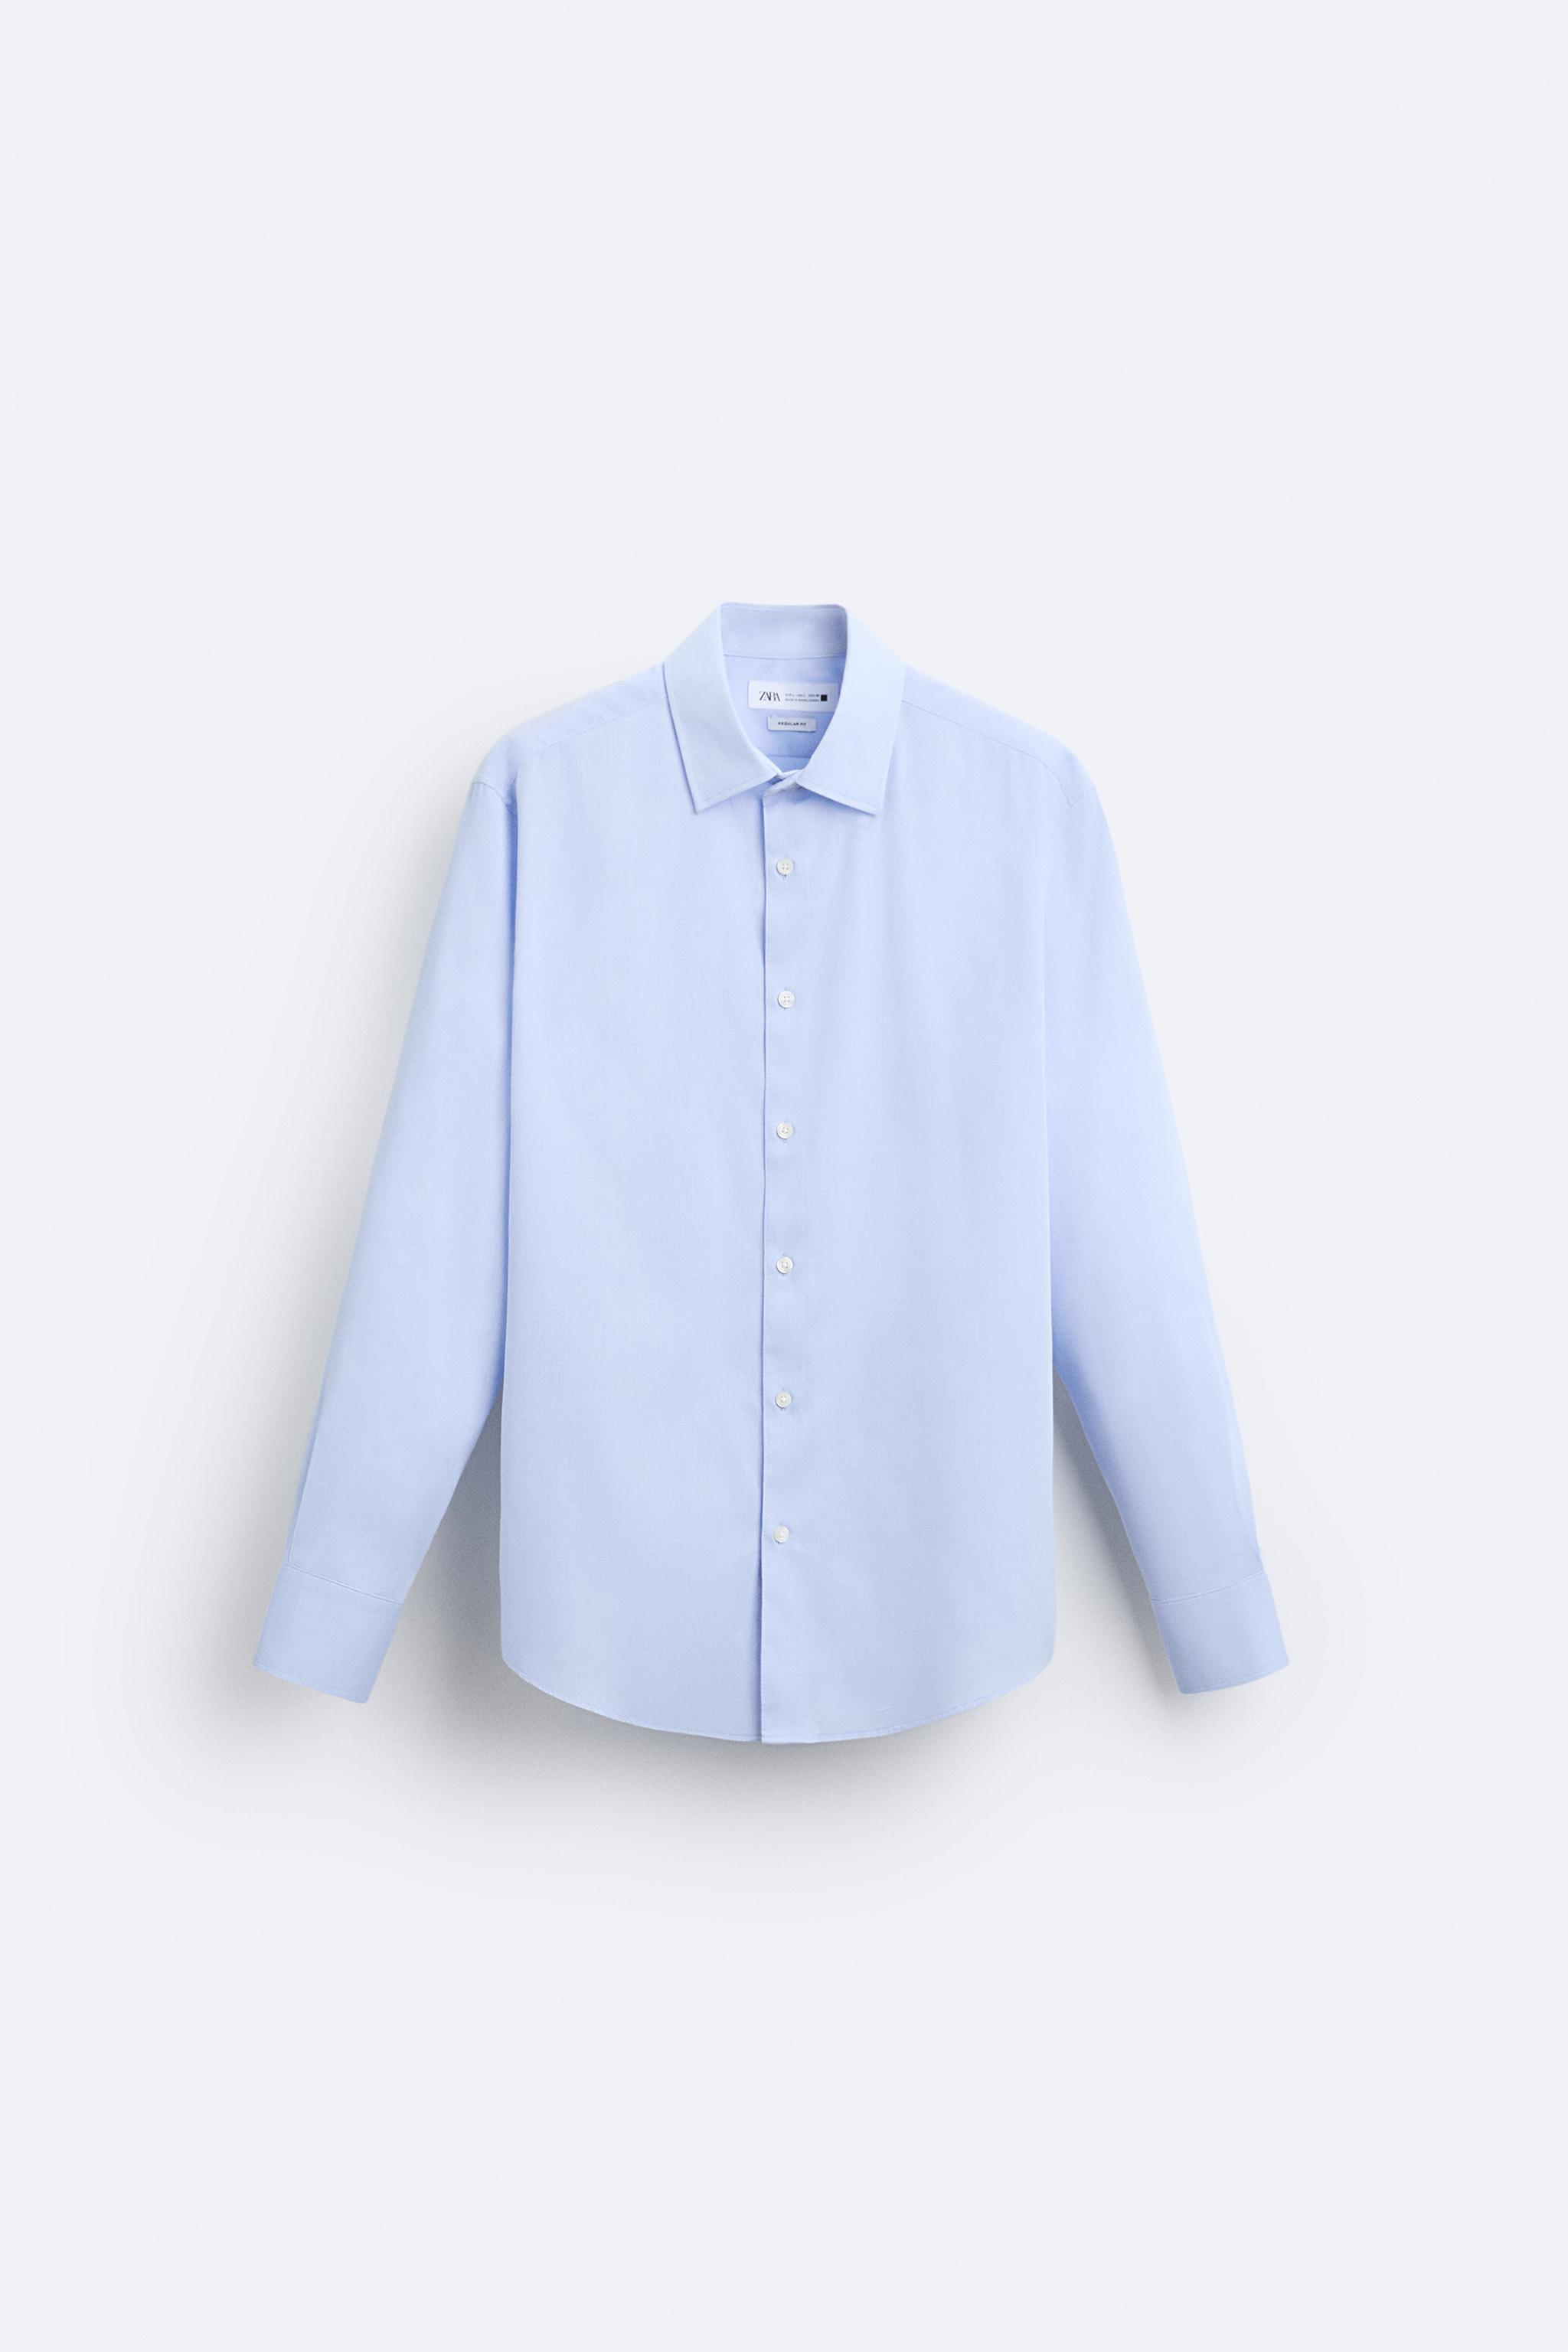 NWT Zara Geometric Print Button Down Shirt Blue/Brown Sz. Medium